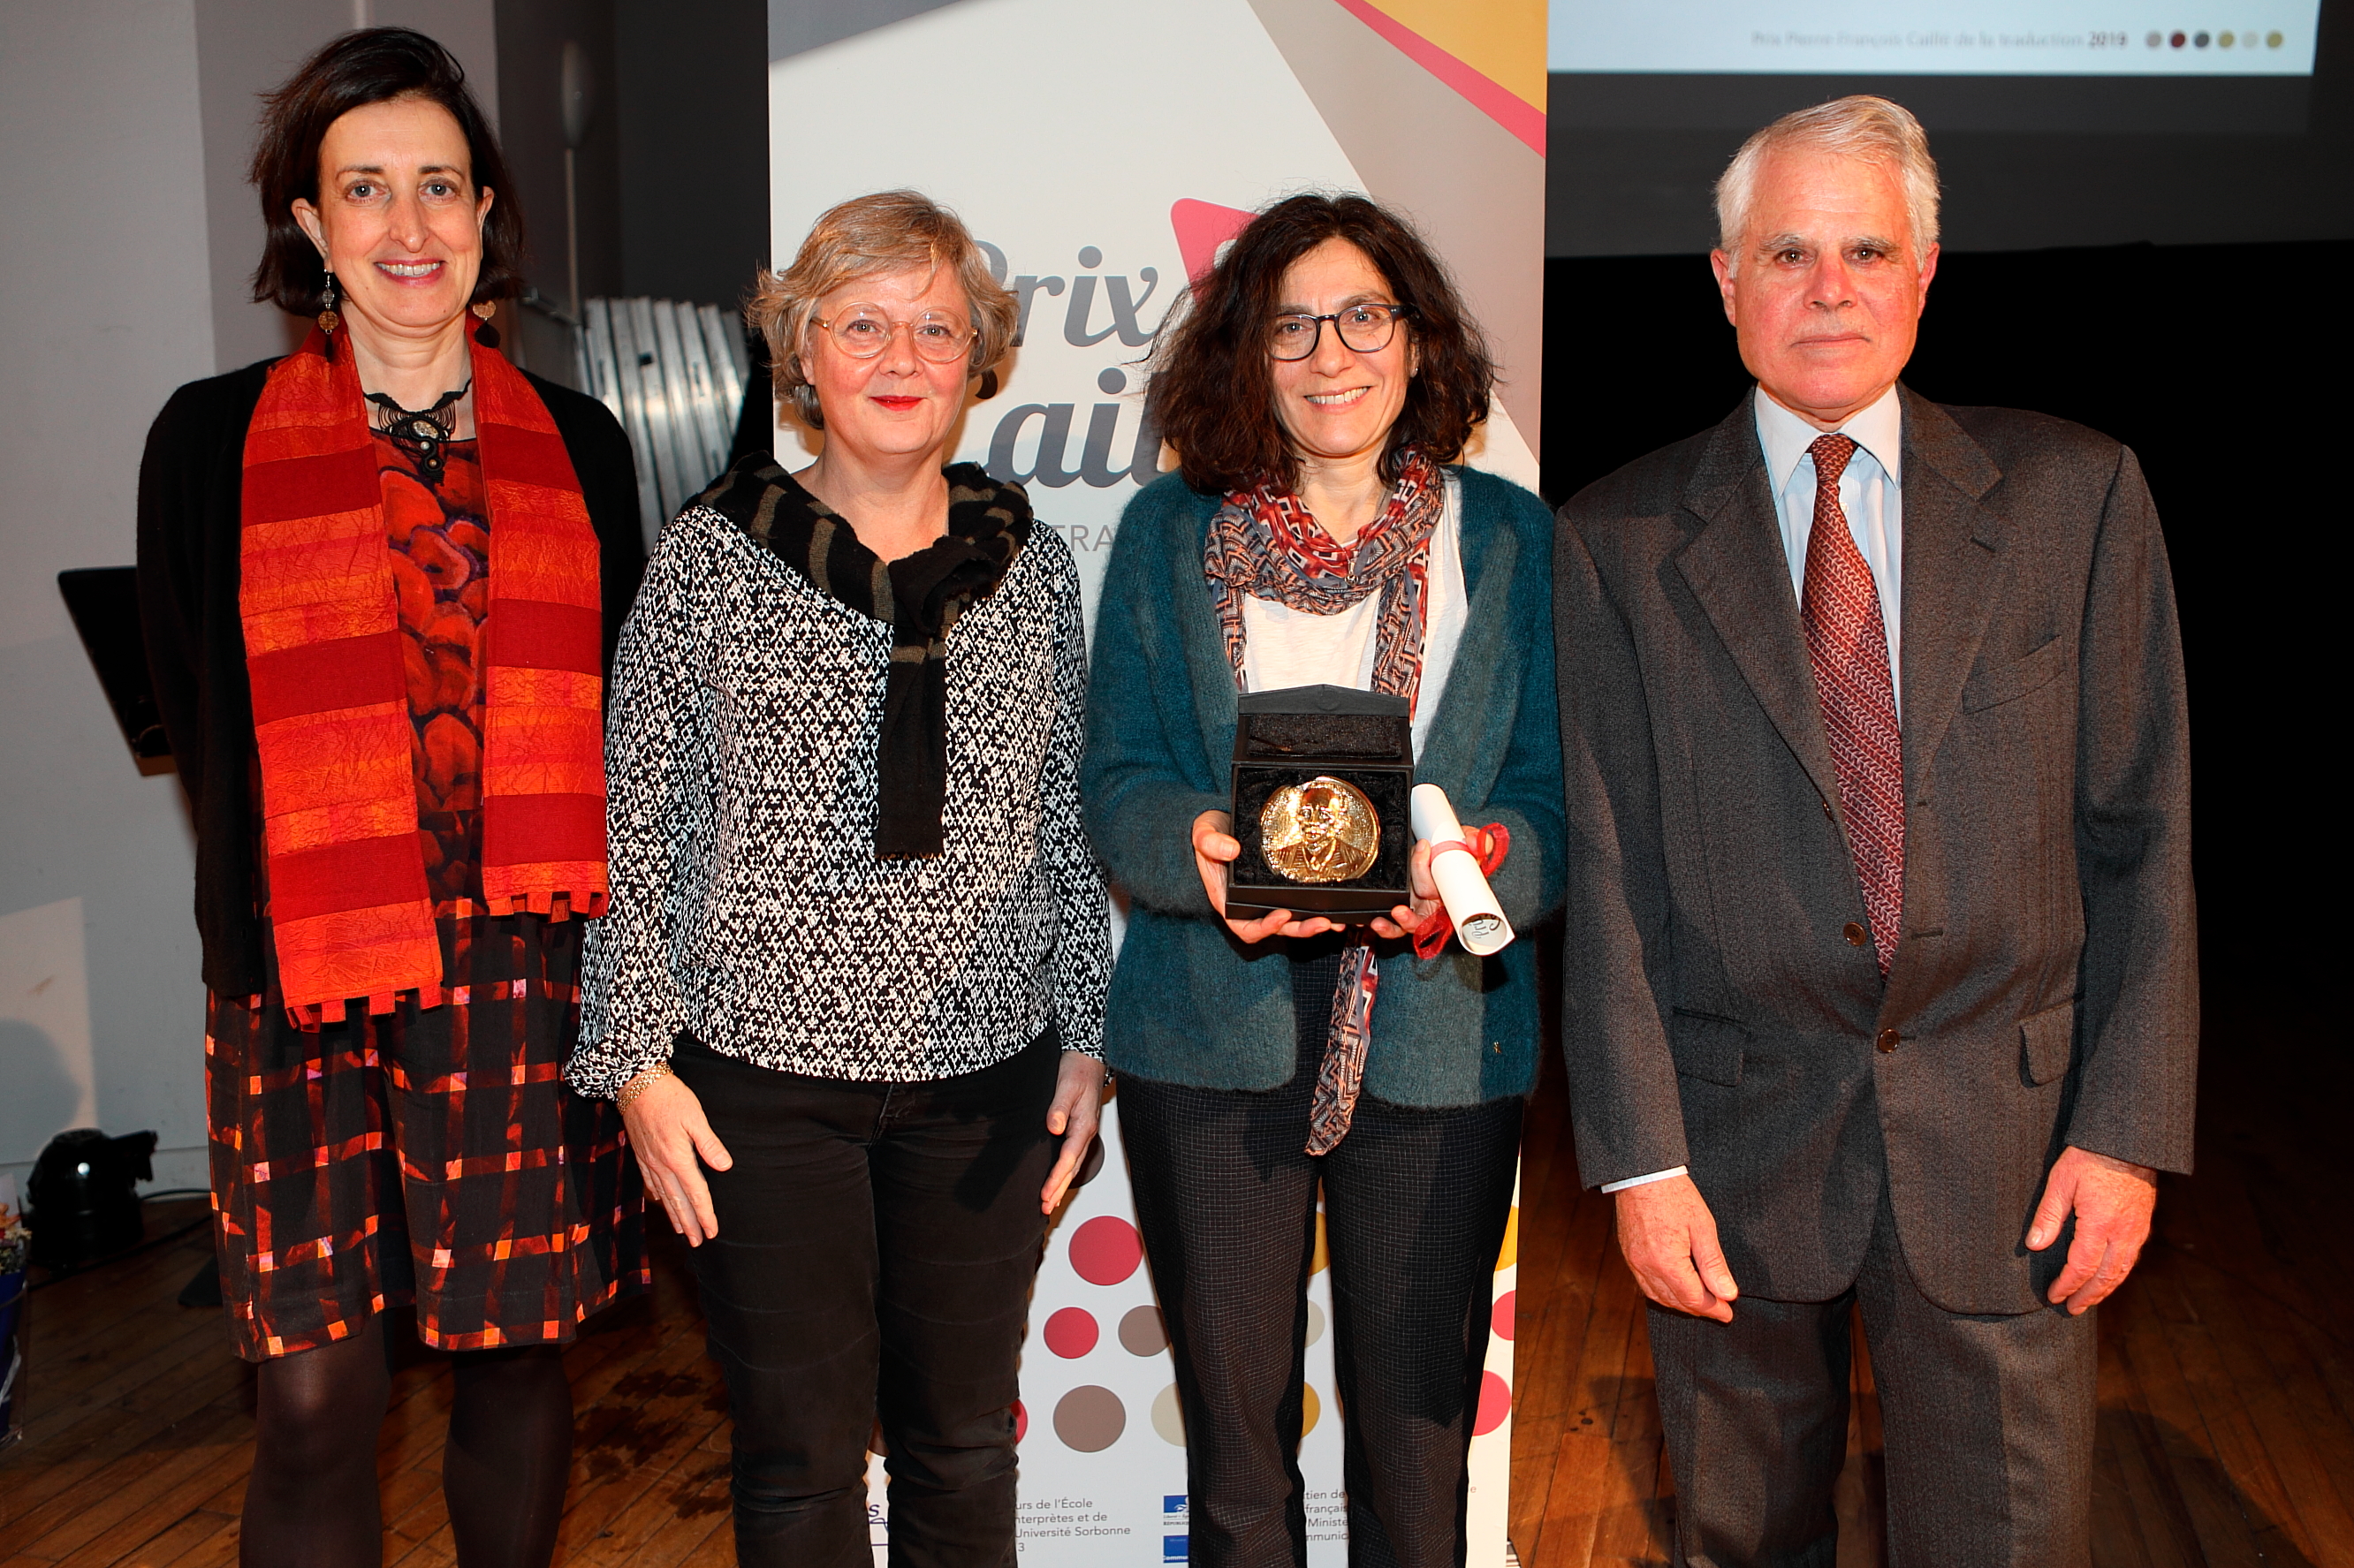 Inés Introcaso, lauréate 2019, avec la présidente de la SFT et le président du jury du prix Pierre-François Caillé